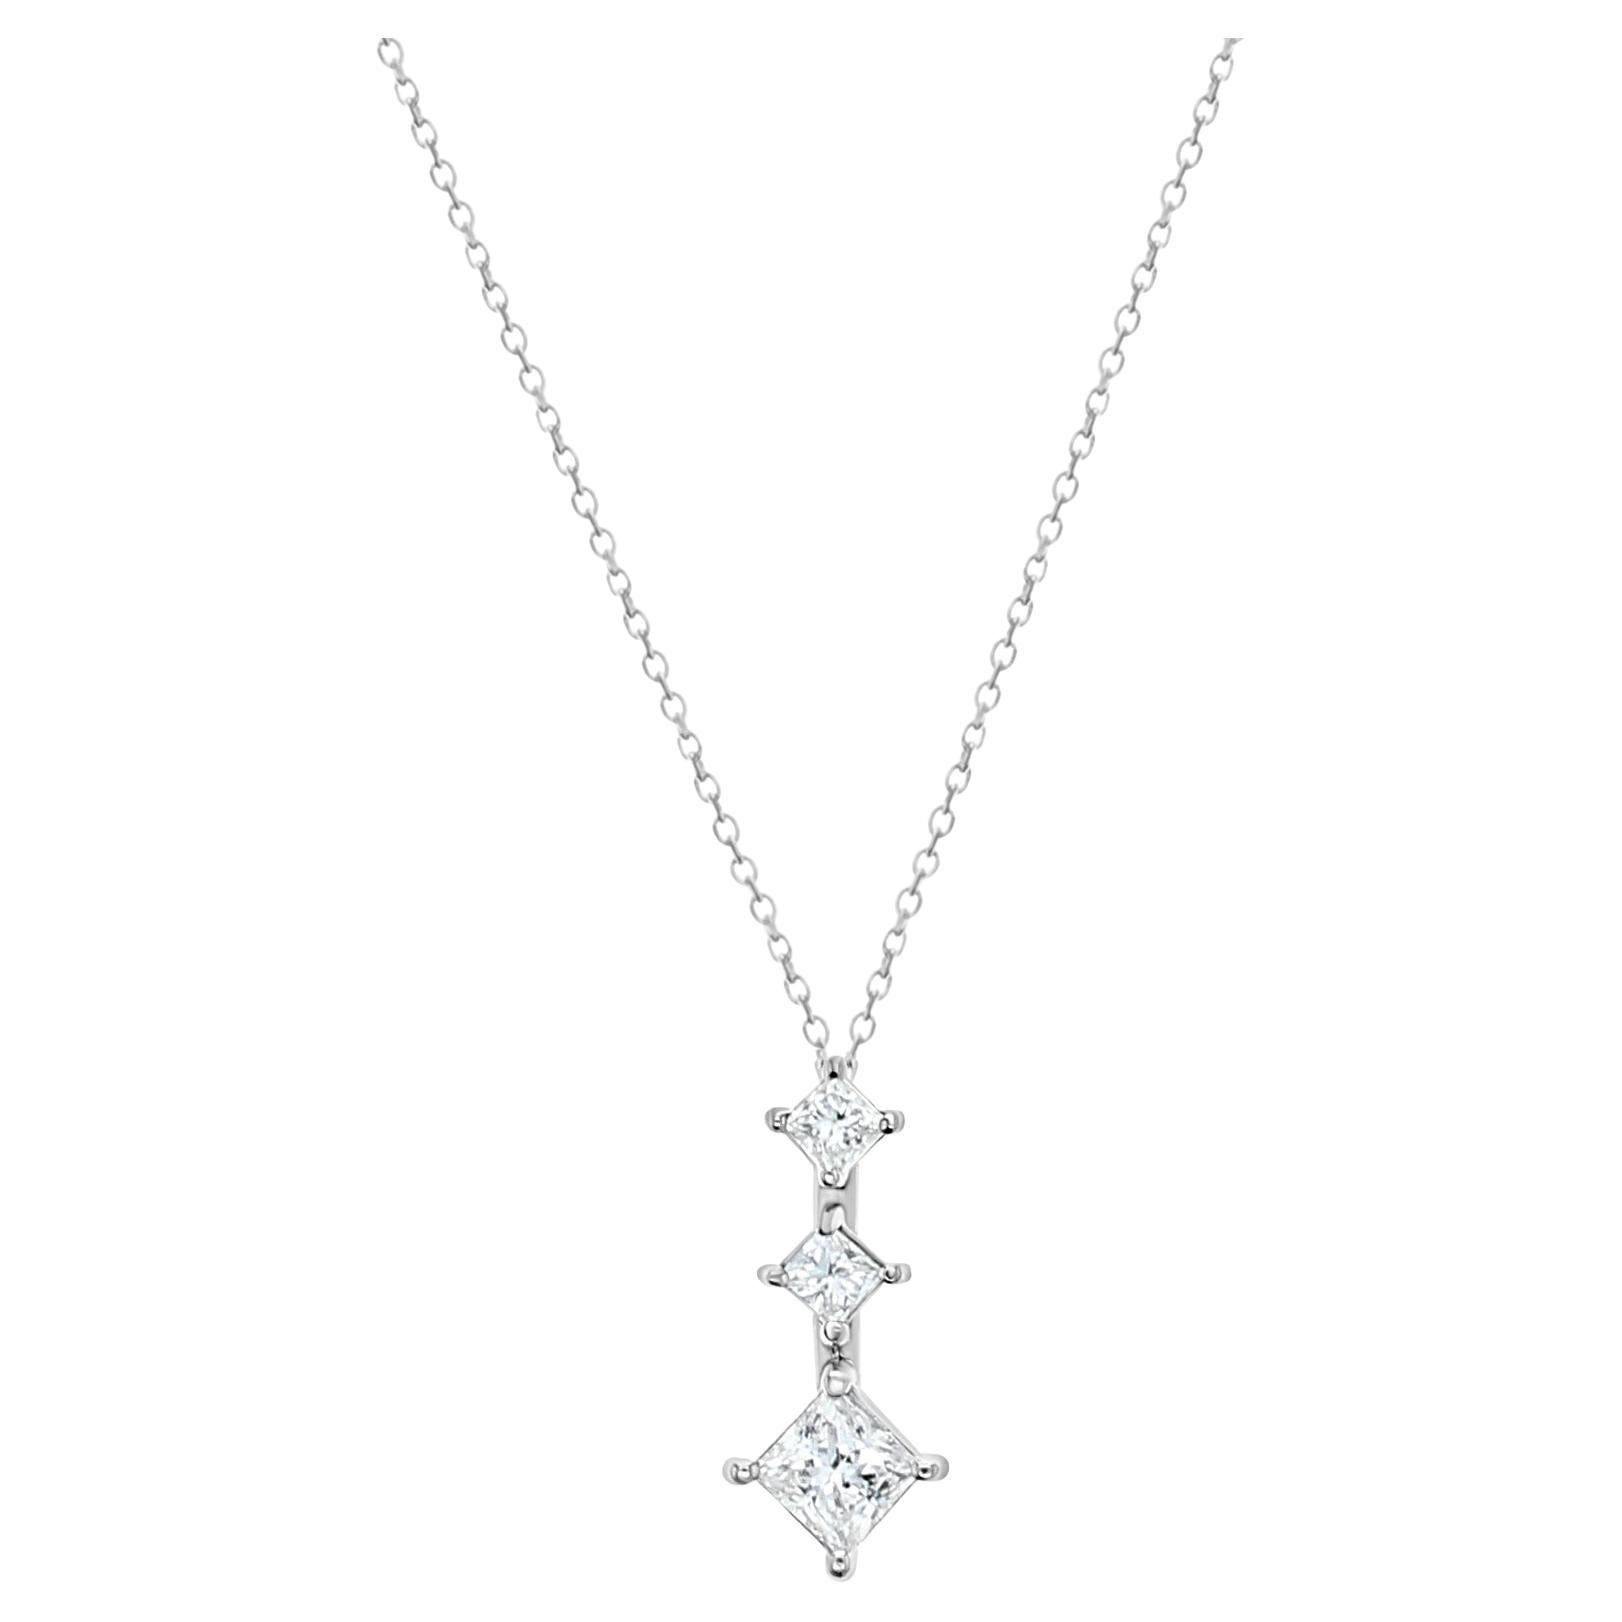 Princess Cut Diamond Past, Present, Future Necklace 1.29cttw - 14k White Gold For Sale